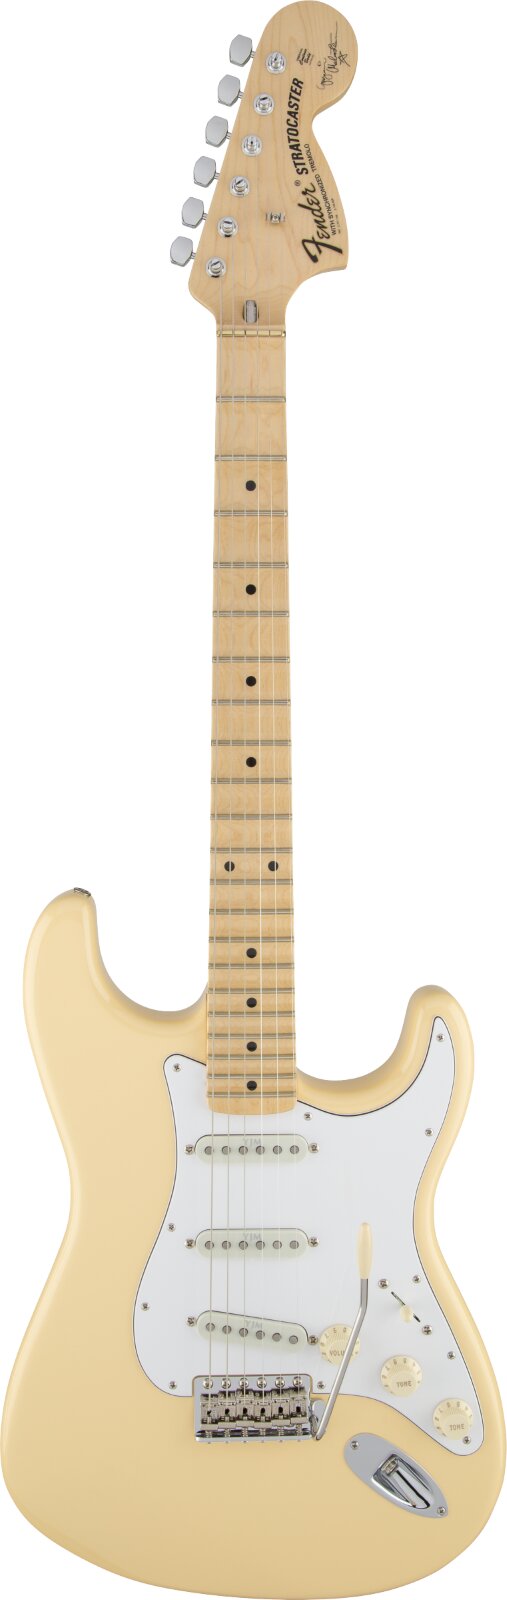 Fender Yngwie Malmsteen Stratocaster, Scalloped Maple Griffbrett, Vintage White : photo 1